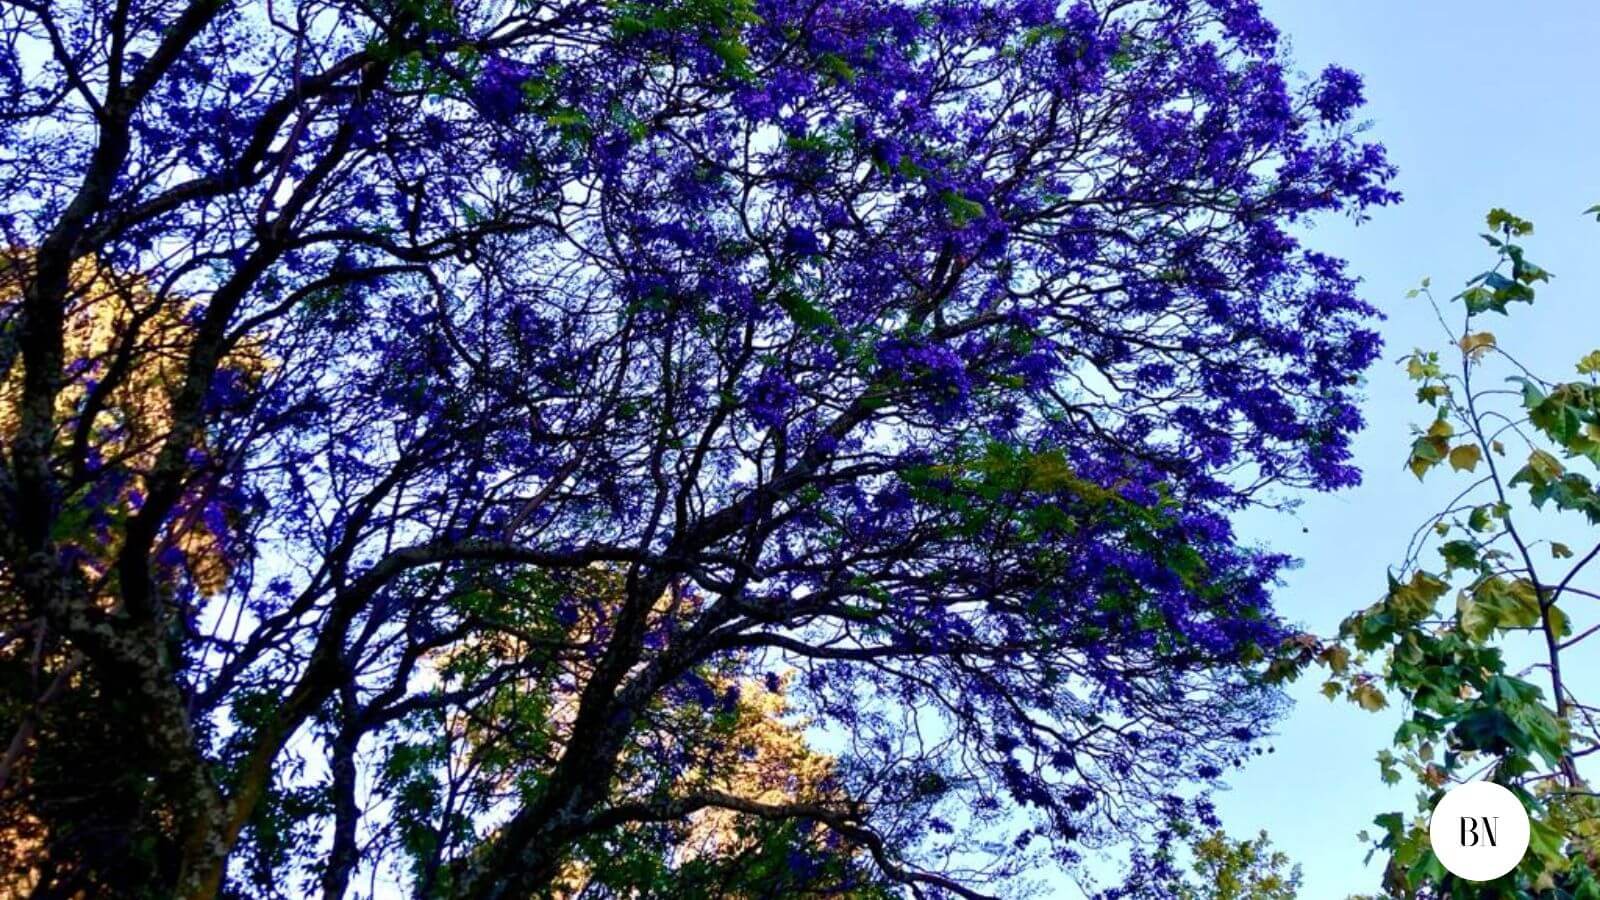 En primavera, Toluca se ilumina por los árboles de Jacarandas